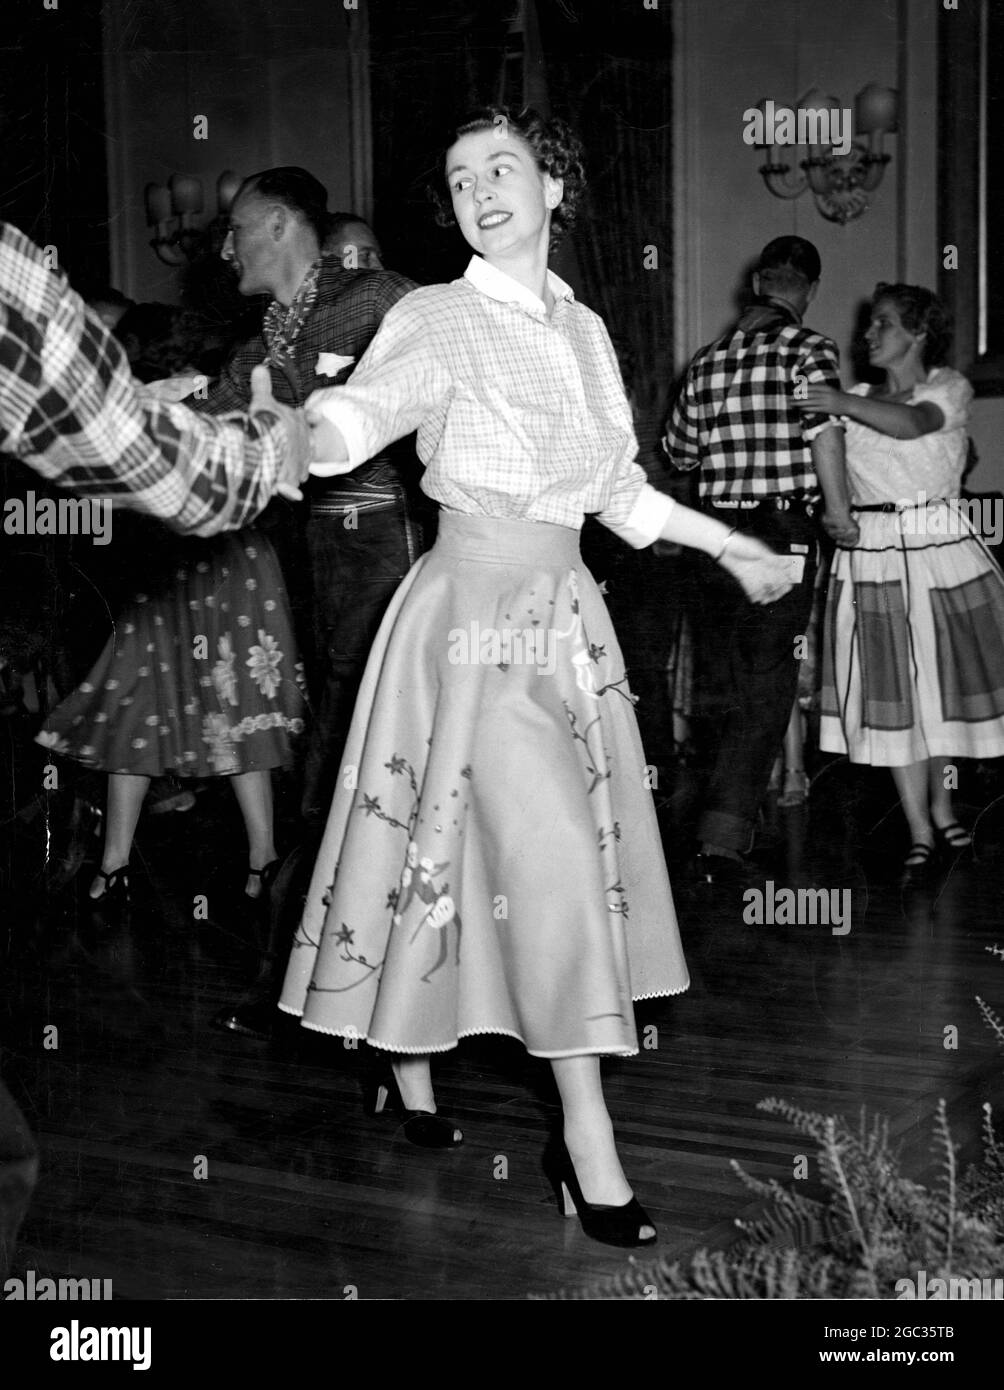 Danse de la place de la princesse Elizabeth à la réception de la Maison du gouvernement d'Ottawa. 12 octobre 1951 Banque D'Images